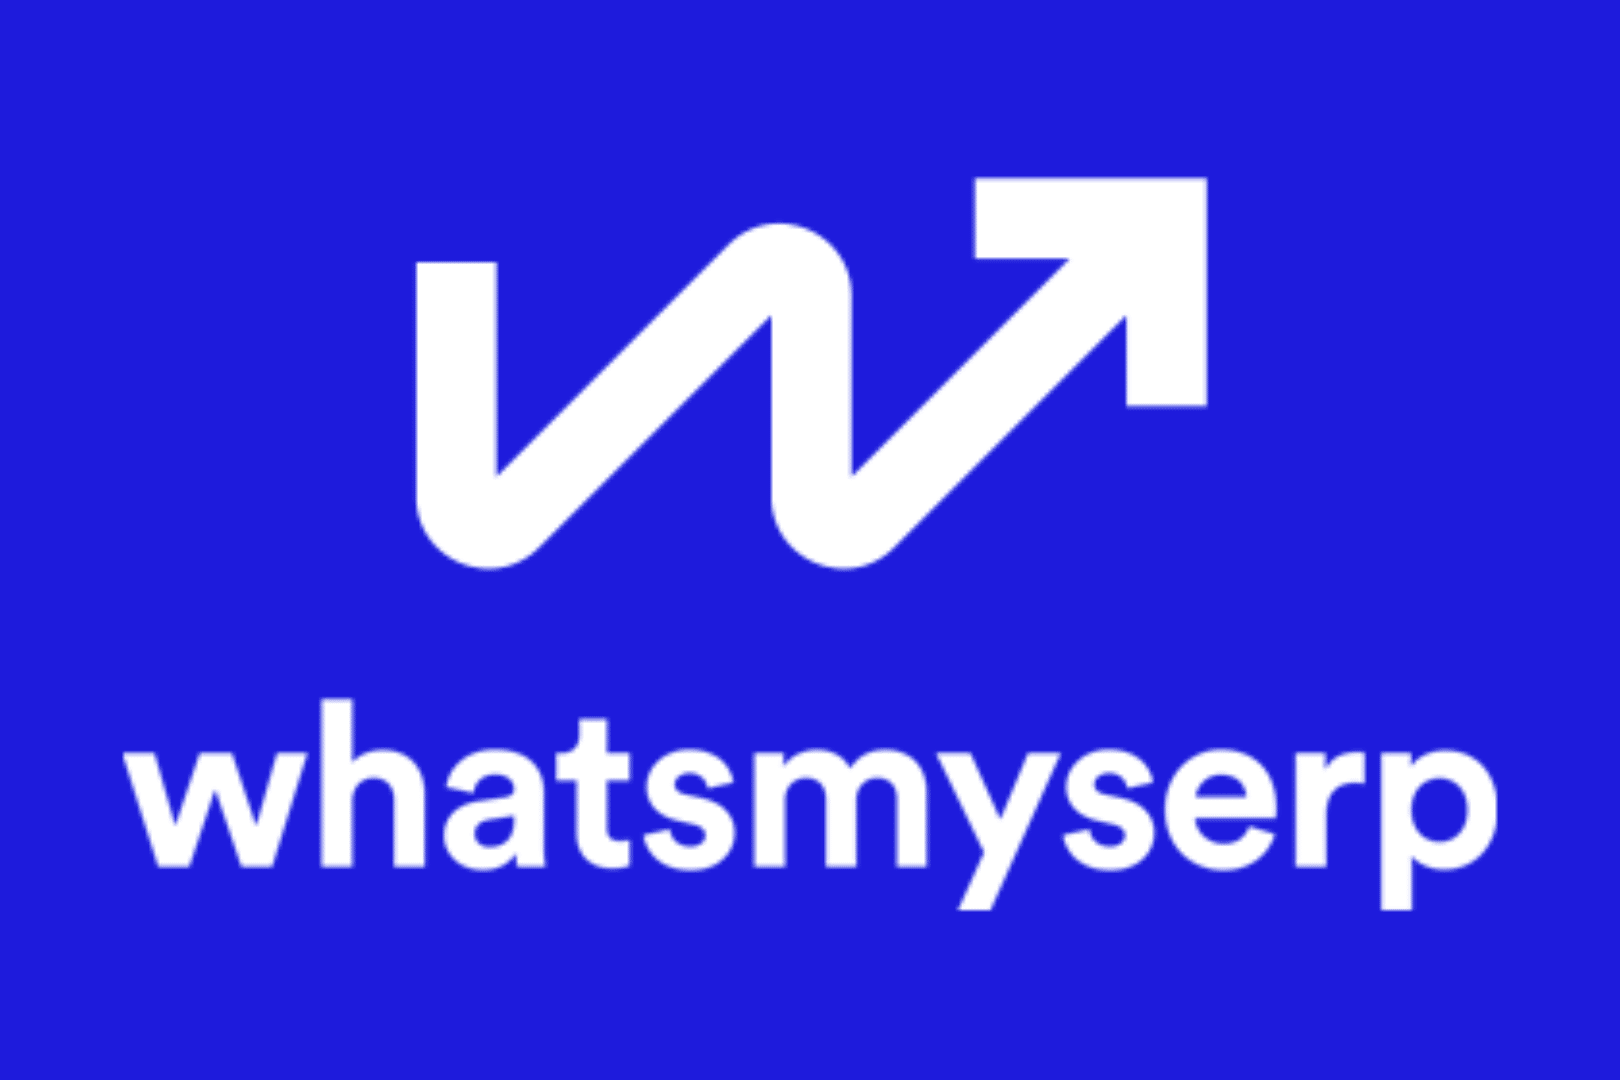 Whatsmyserp logo